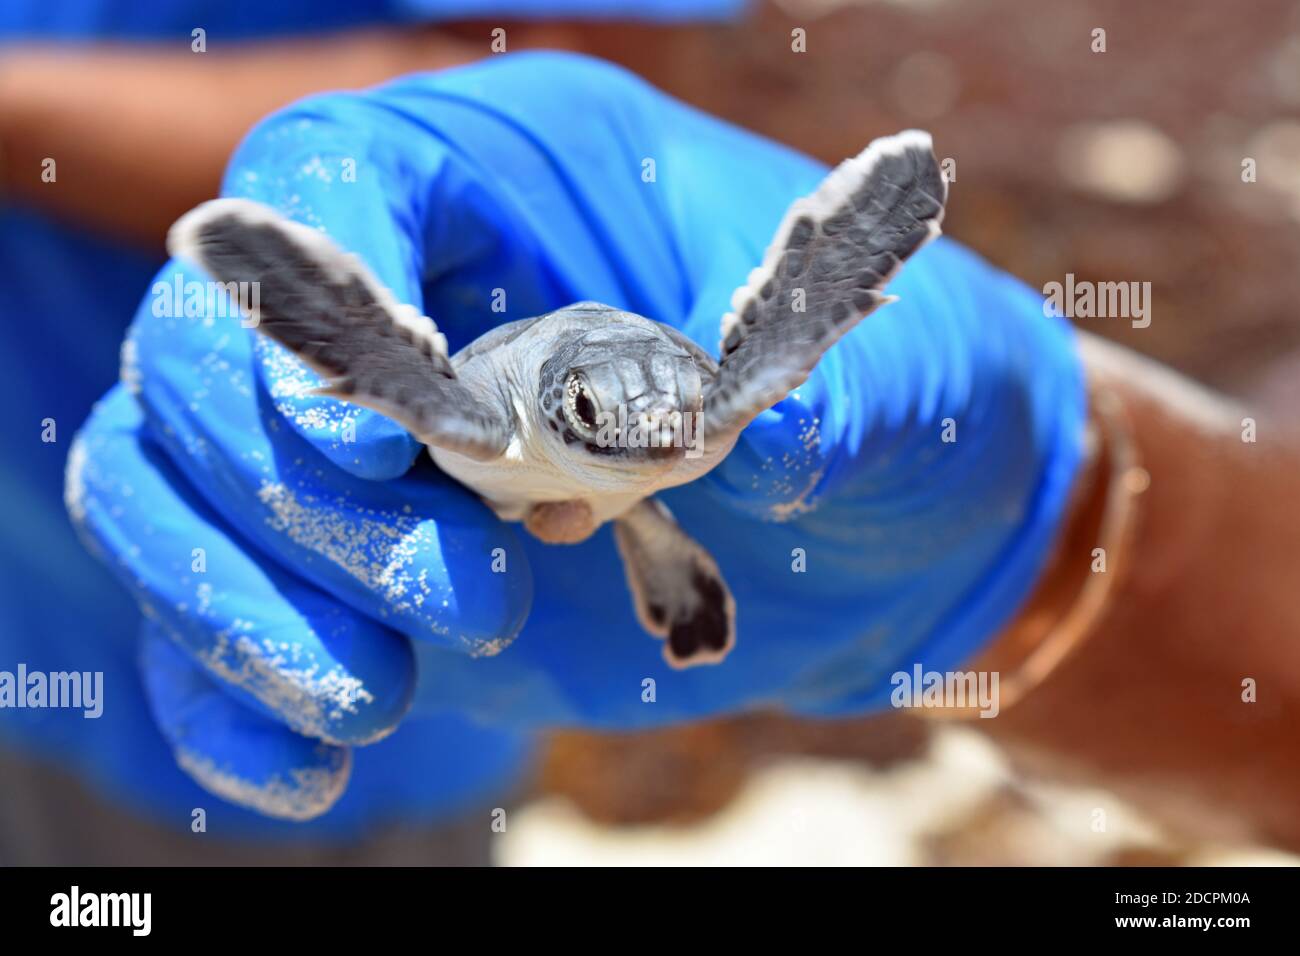 Ein schwarzer Mann mit blauen Plastikhandschuhen hält eine grüne Meeresschildkröte beim Brüten während einer Öko-Tour auf Cozumel, Mexiko. Die Schildkröte hat ihre Flossen angehoben. Stockfoto